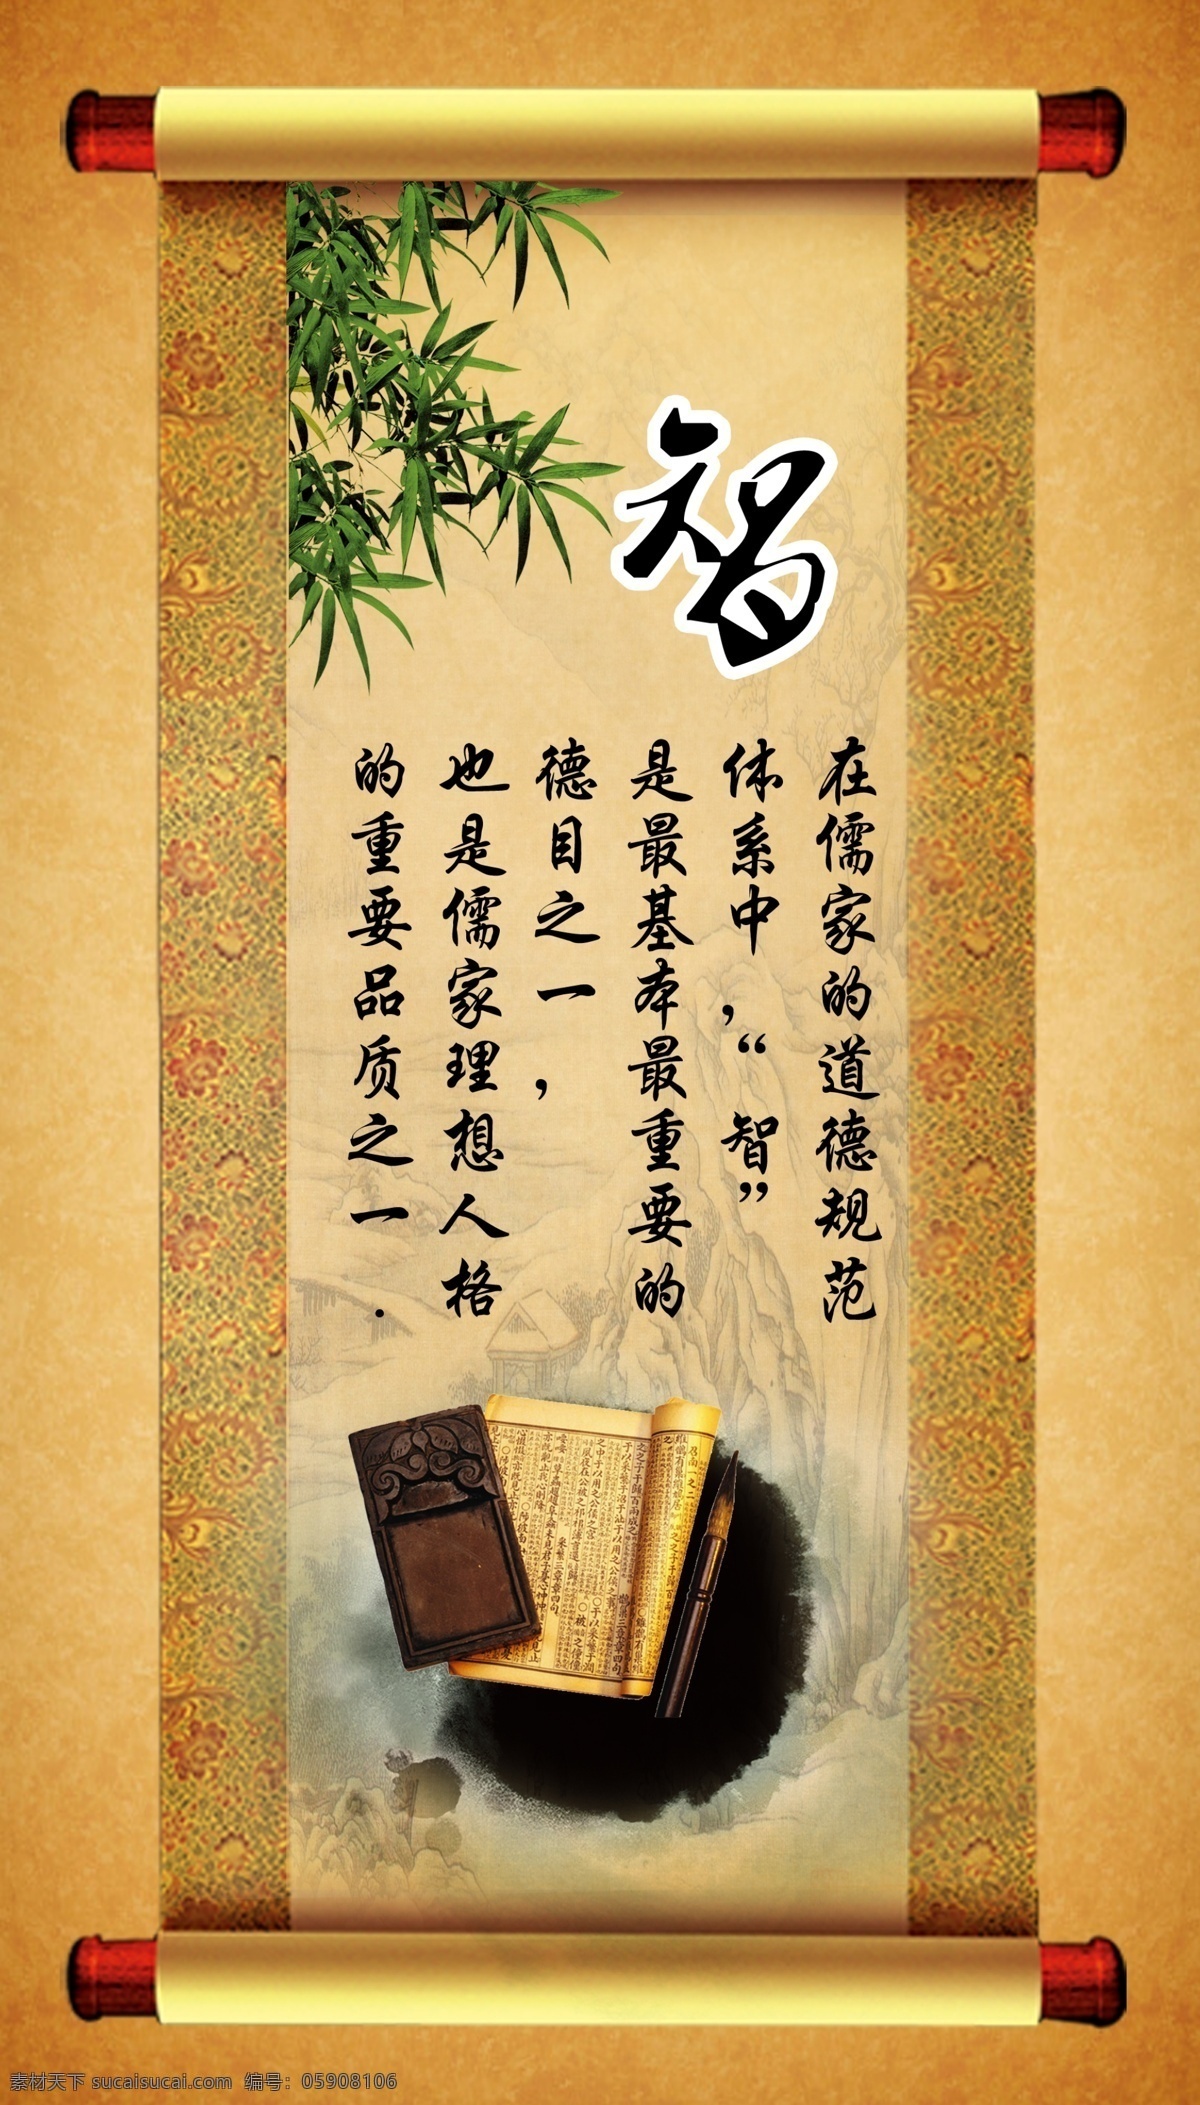 八德 智 中国传统美德 竹子 画轴 书 墨迹 文字 展板模板 广告设计模板 源文件